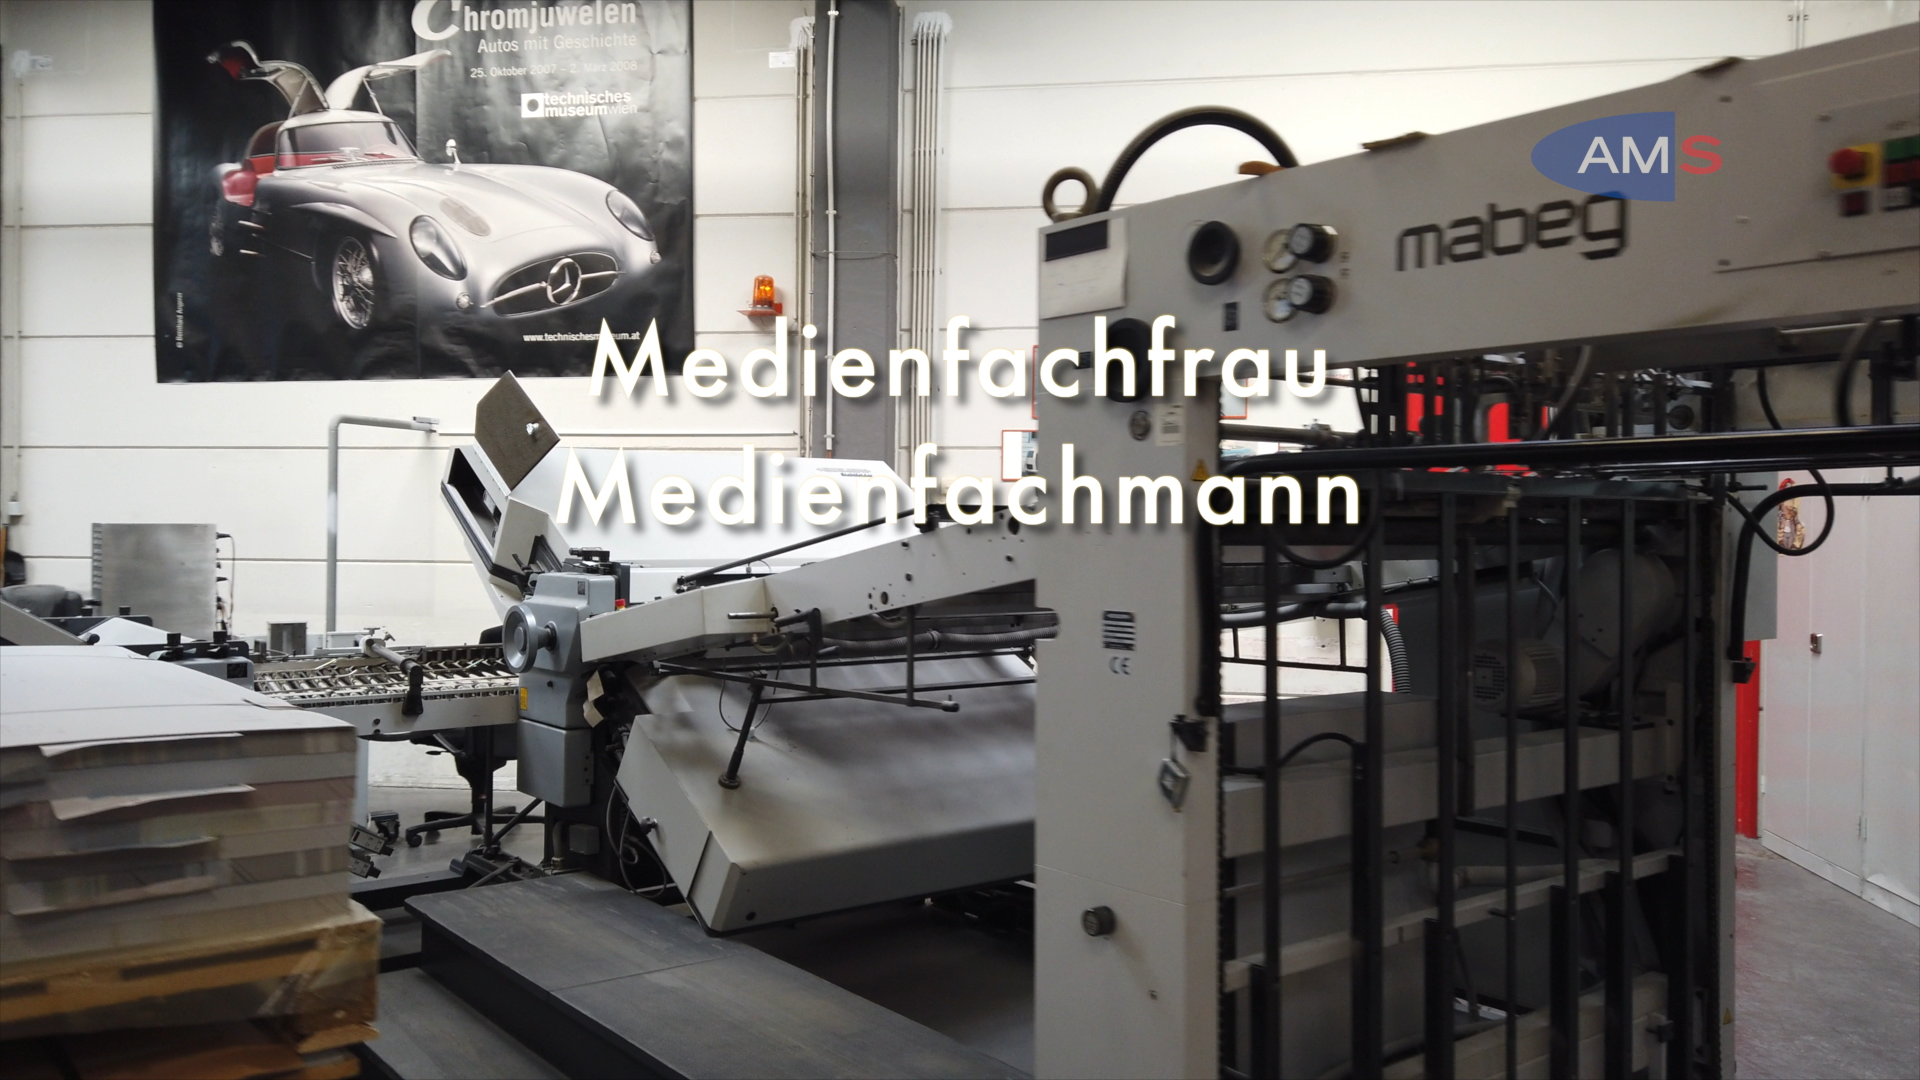 Medienfachmann/-frau - Schwerpunkt Grafik, Print, Publishing und audiovisuelle Medien (Audio, Video und Animation)